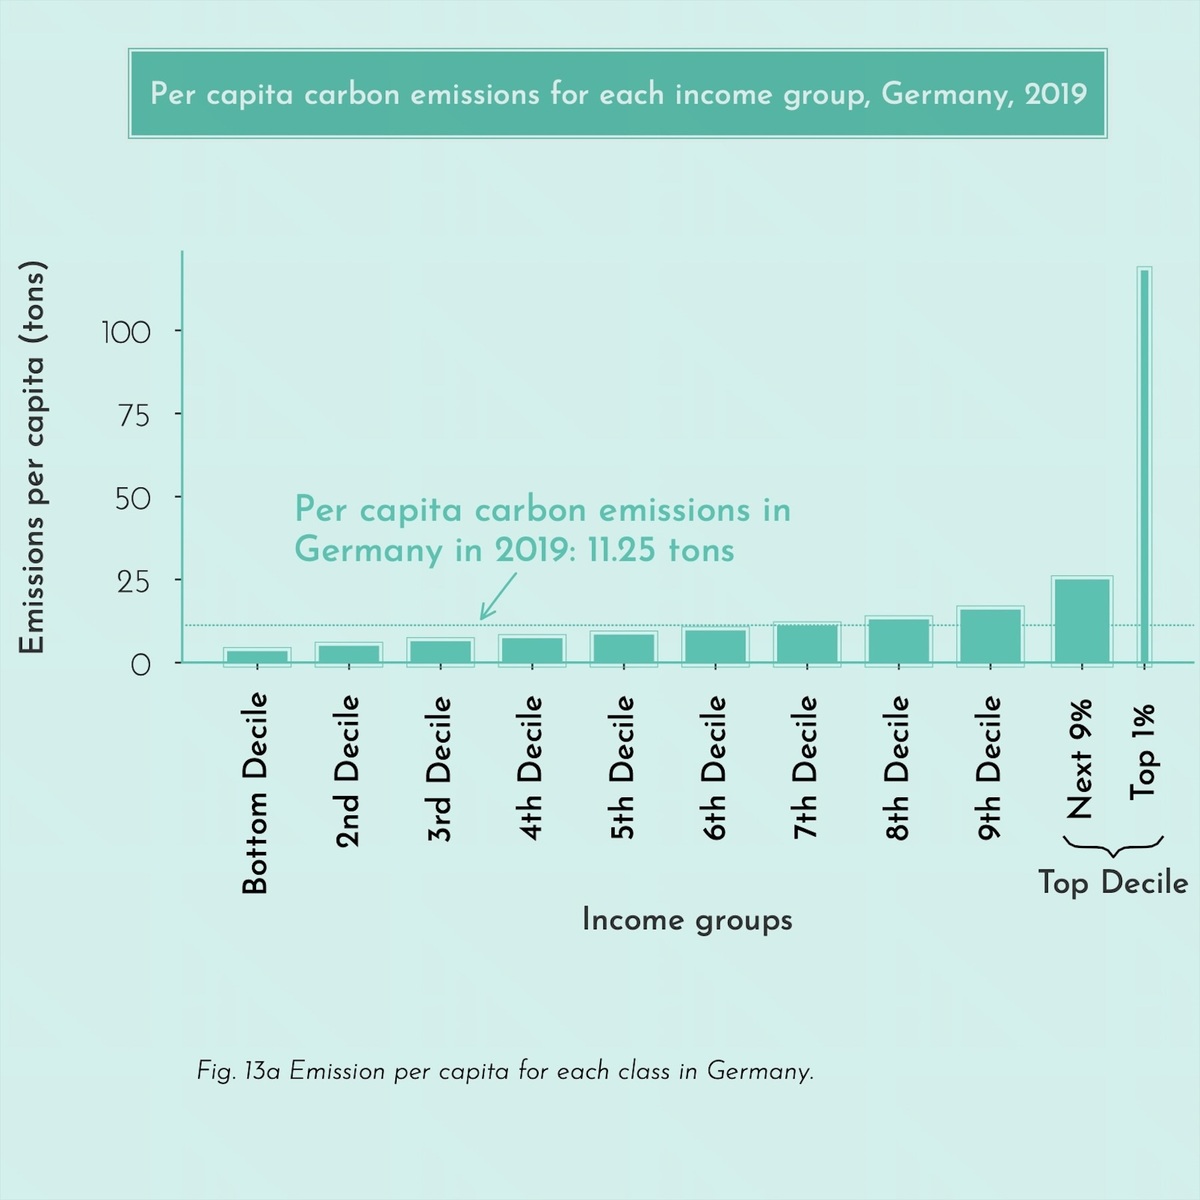 Graphische Darstellung der pro-Kopf-Kohlenstoffemissionen nach Einkommensgruppen